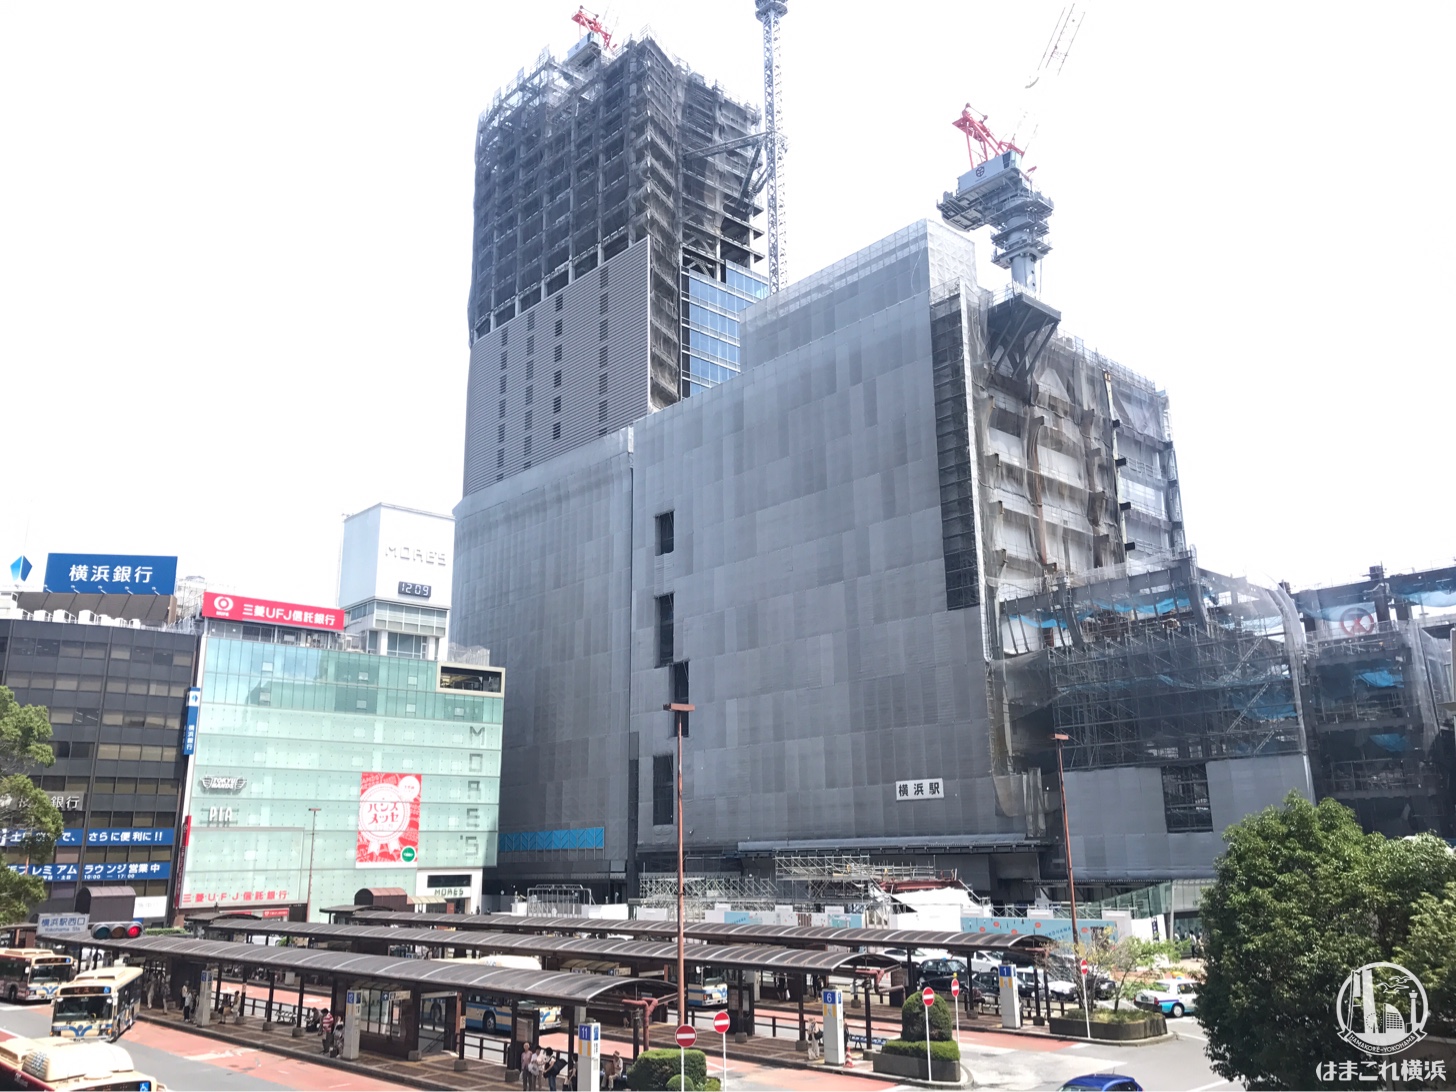 2018年8月 横浜駅西口 駅ビル完成までの様子 [写真掲載] | はまこれ横浜